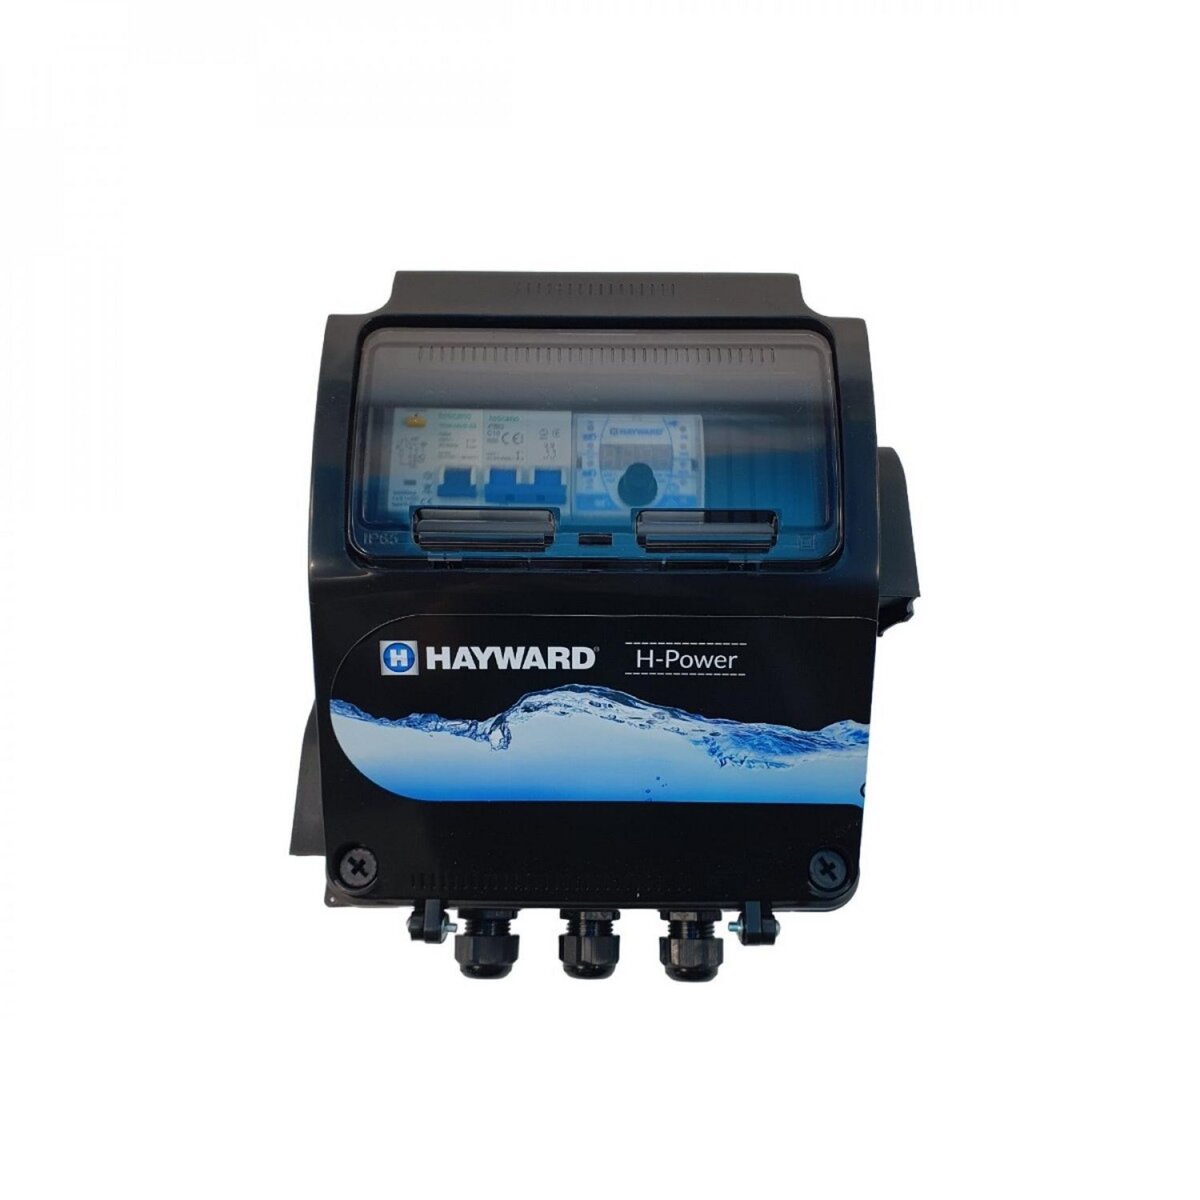 Hayward Coffret électrique H-POWER monophasé pour pompe de piscine - HPOW230DT50